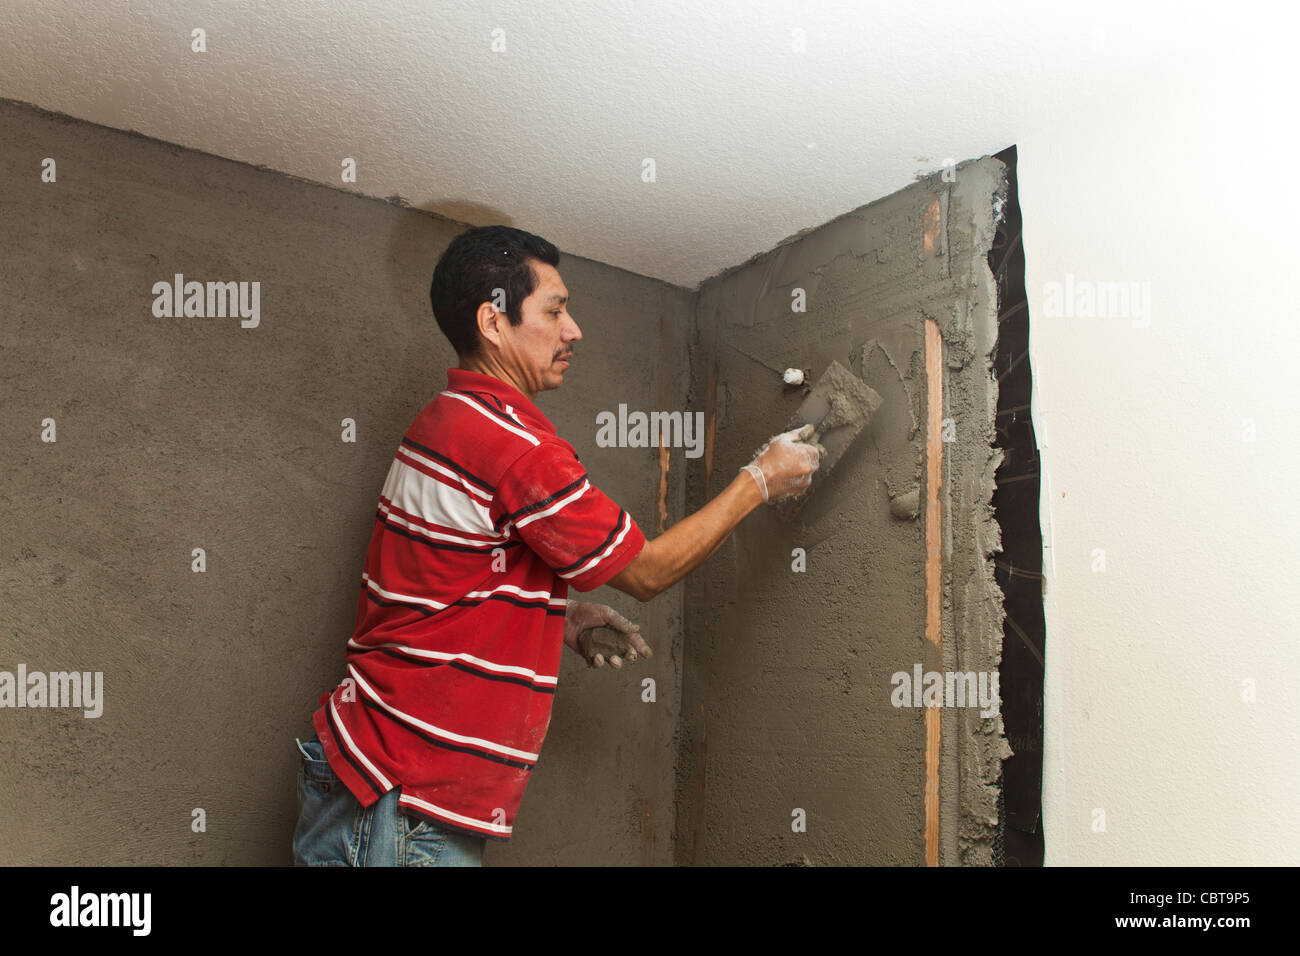 Hispanic Mann aus Mexiko, der sein eigenes Baugeschäft in den USA arbeitet ersetzt Dusche Zement im Gespräch mit Mitarbeiter zu verbreiten. Herr © Myrleen Pearson Stockfoto